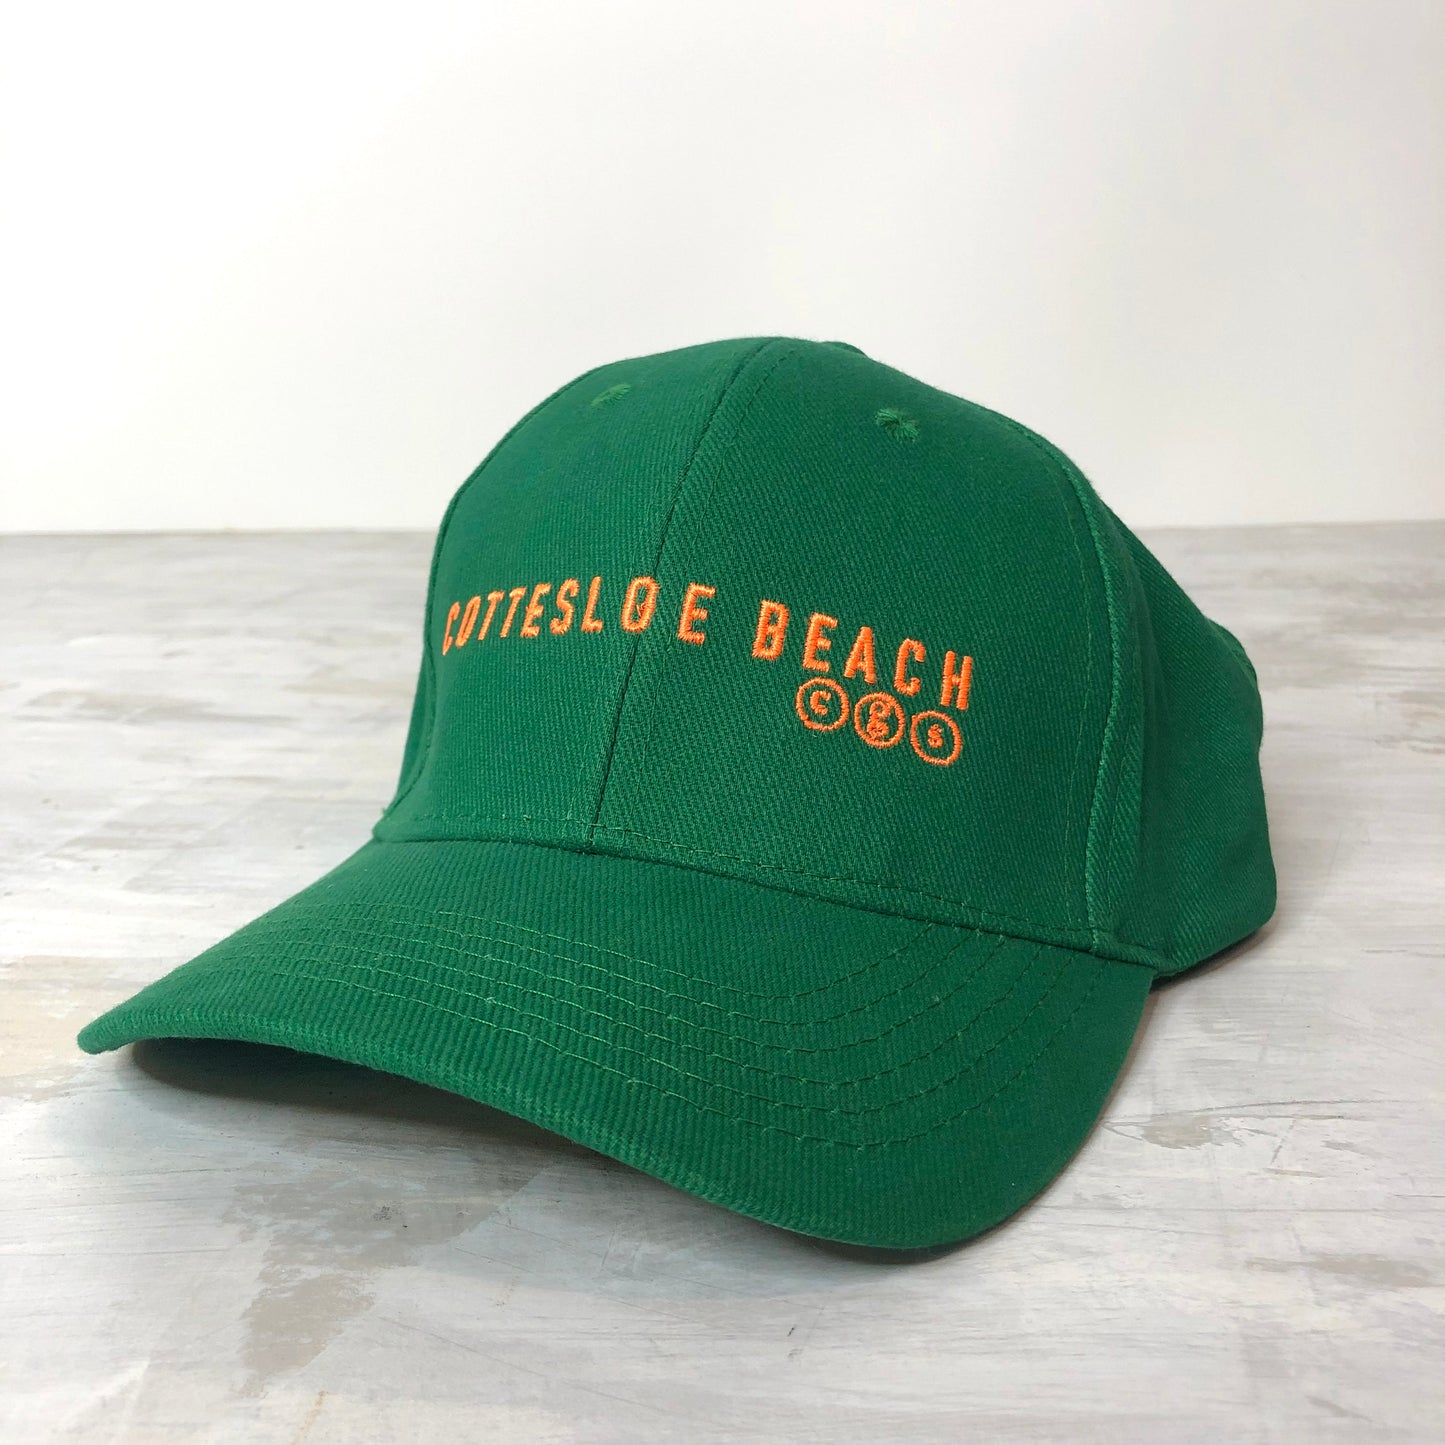 Emerald Green Cap -  Fleuro Orange Text